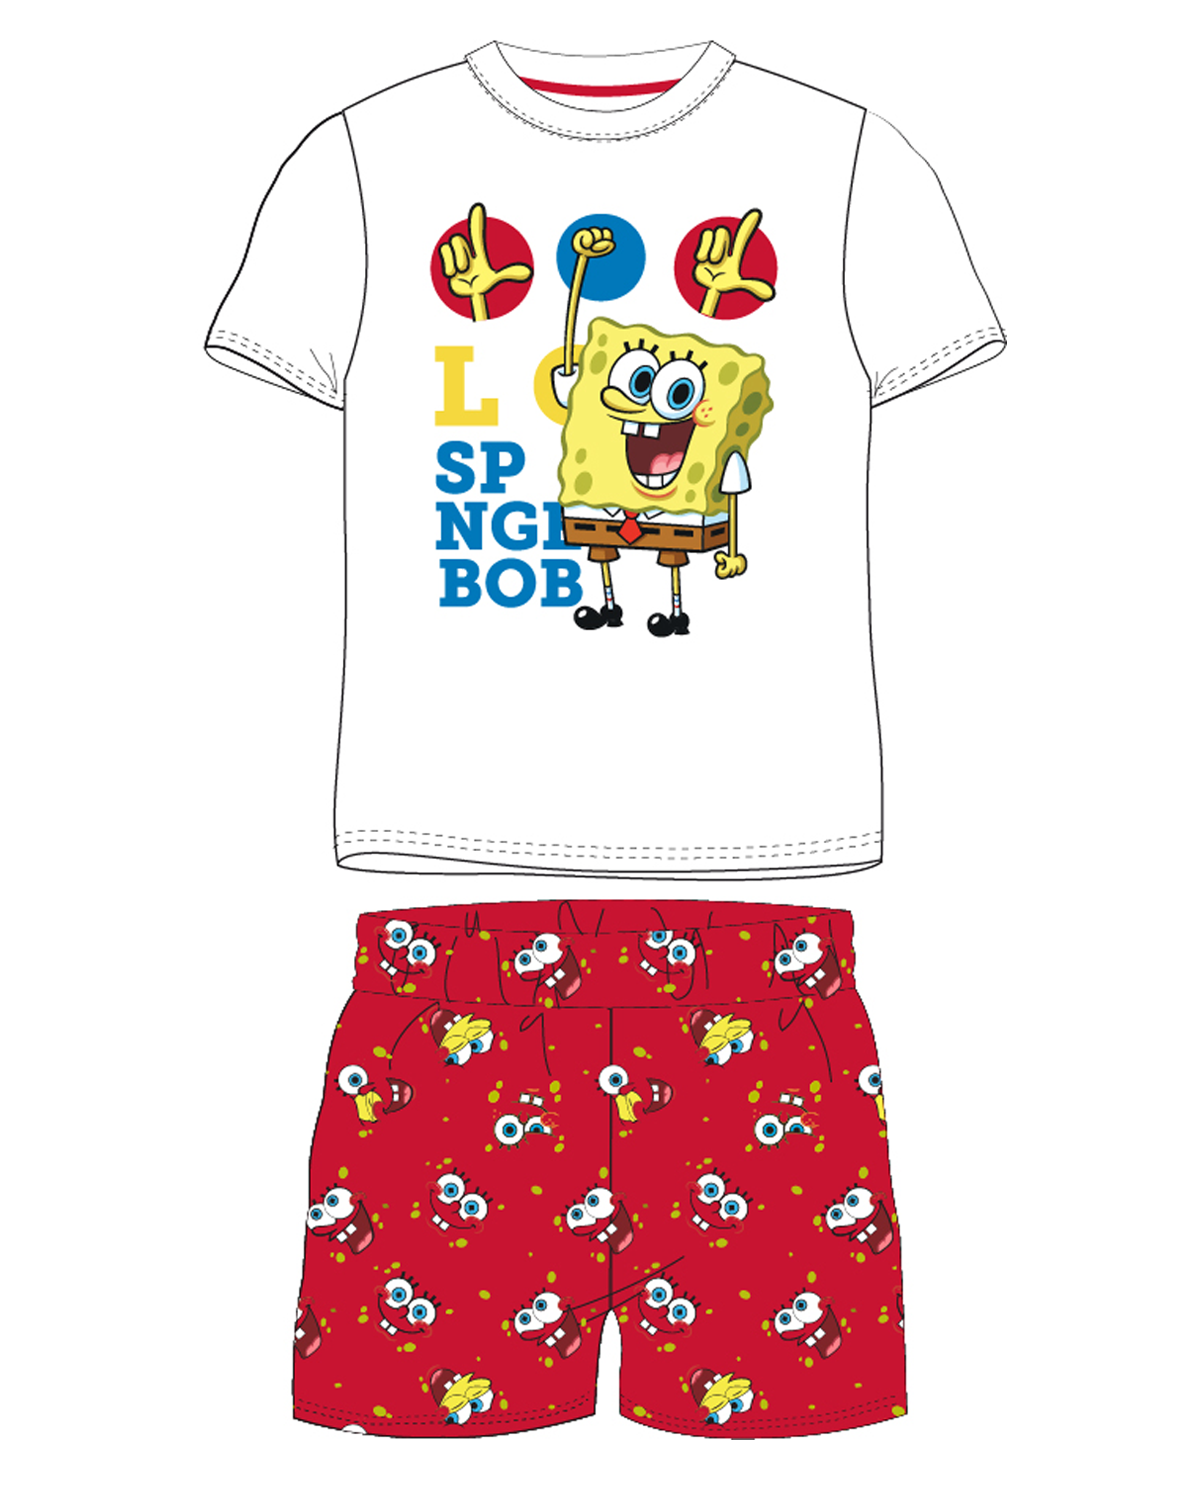 SpongeBob v kalhotách - licence Chlapecké pyžamo - SpongeBob v kalhotách 5204203W, bílá / červená Barva: Mix barev, Velikost: 110